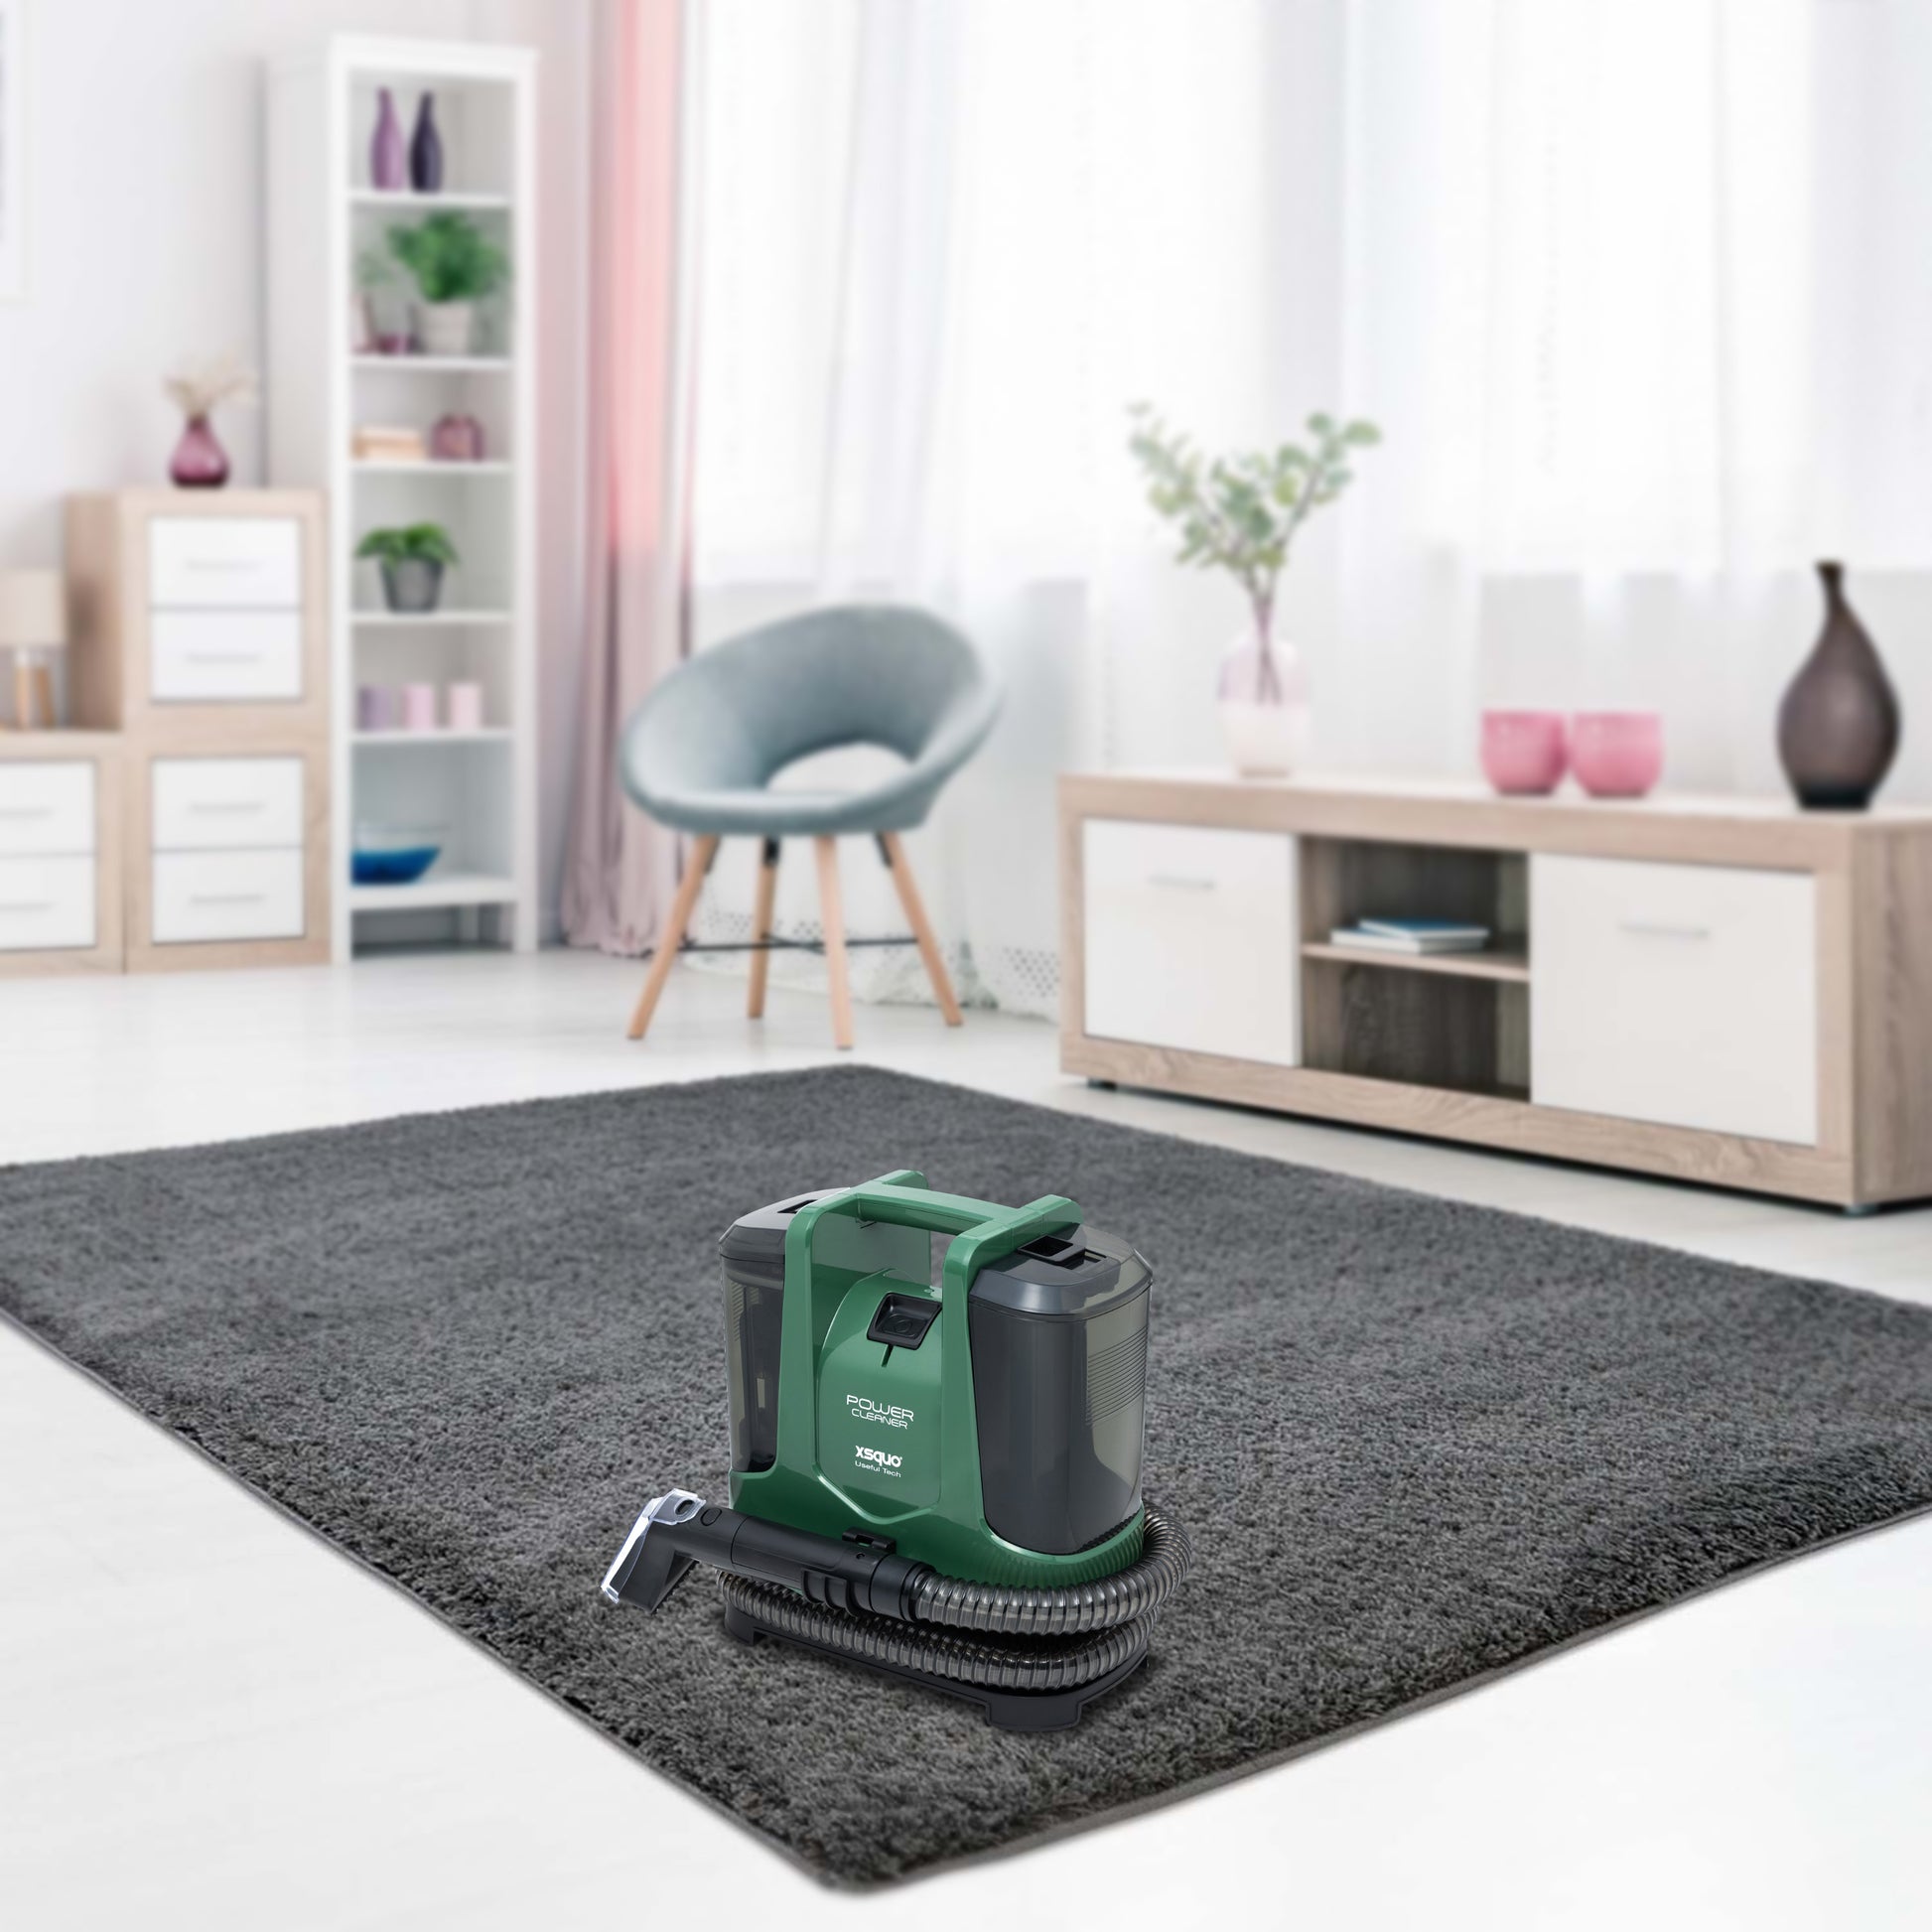 XSQUO Useful Tech. Power Cleaner Aspirador de tapicerías, alfombras  moquetas y cortinas Pulveriza, limpia y aspira